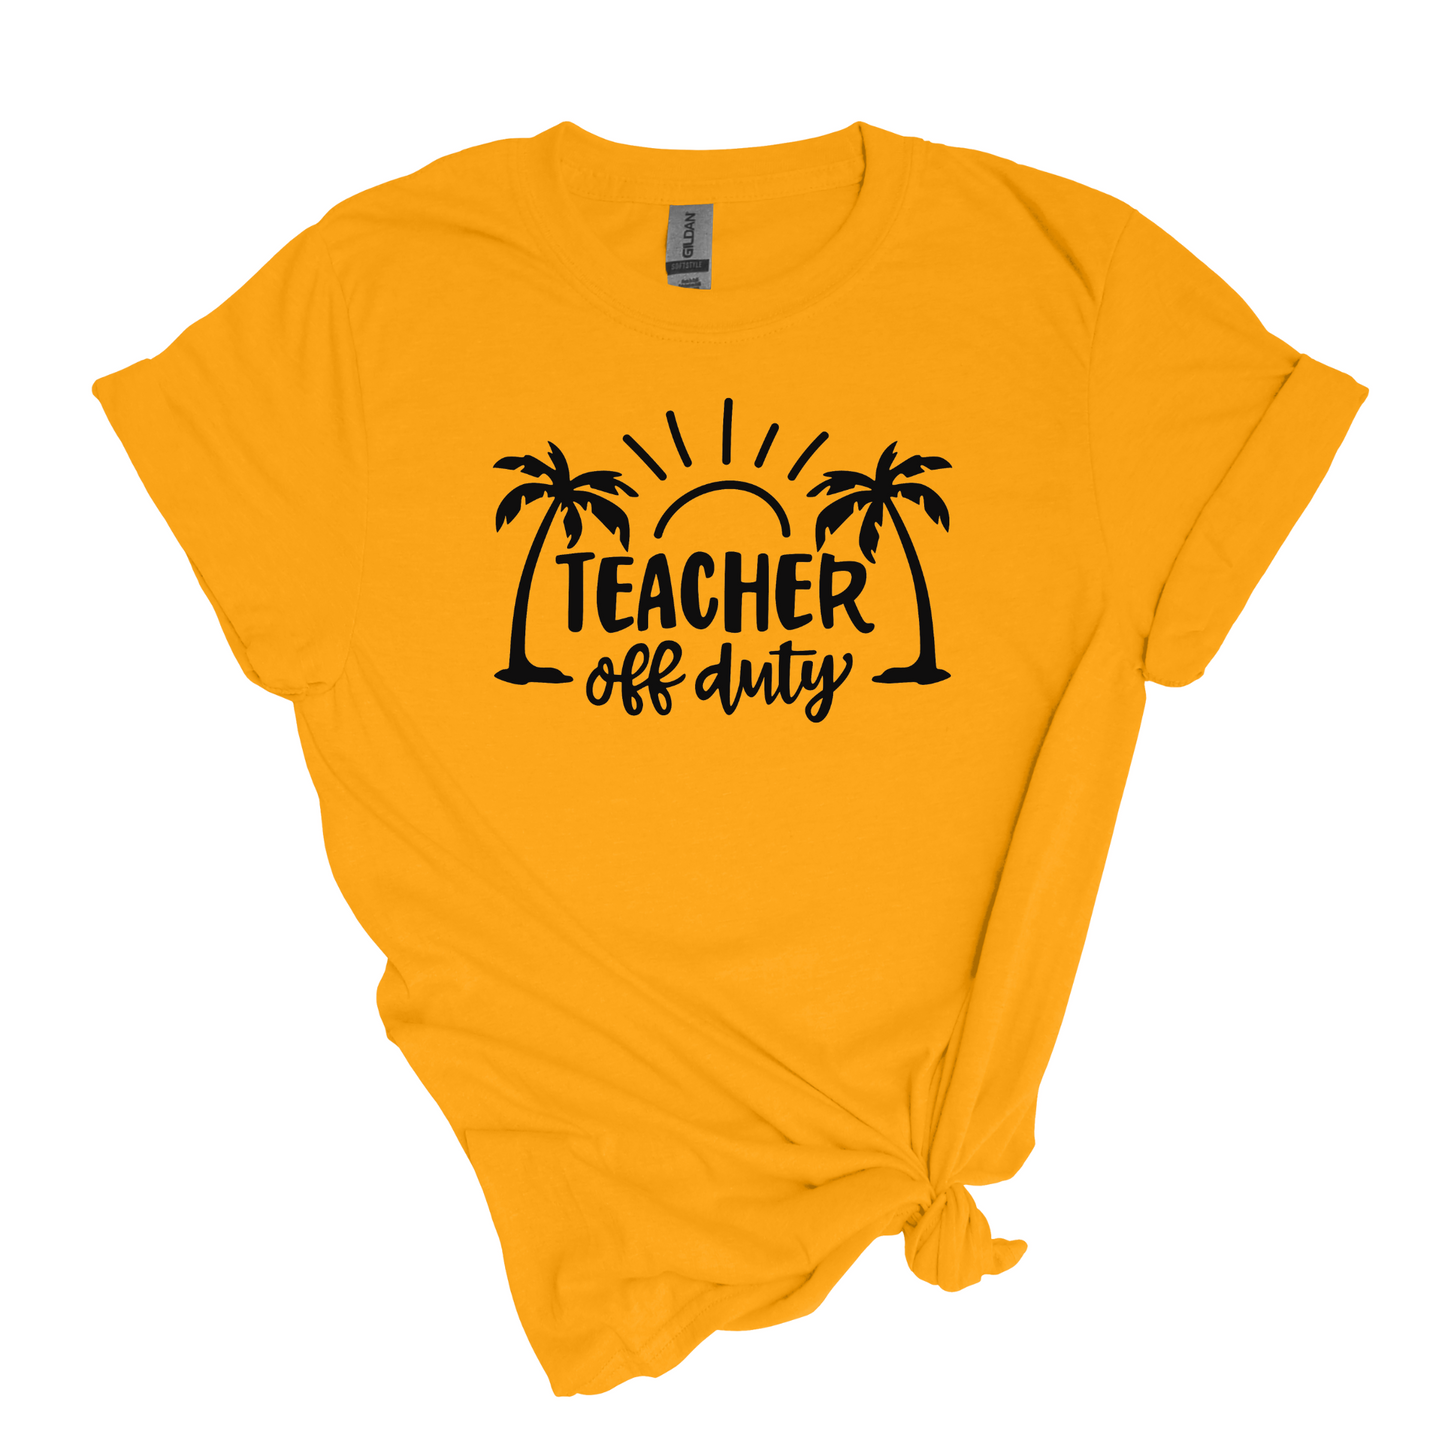 Teacher Off Duty - Adult Unisex Soft T-shirt